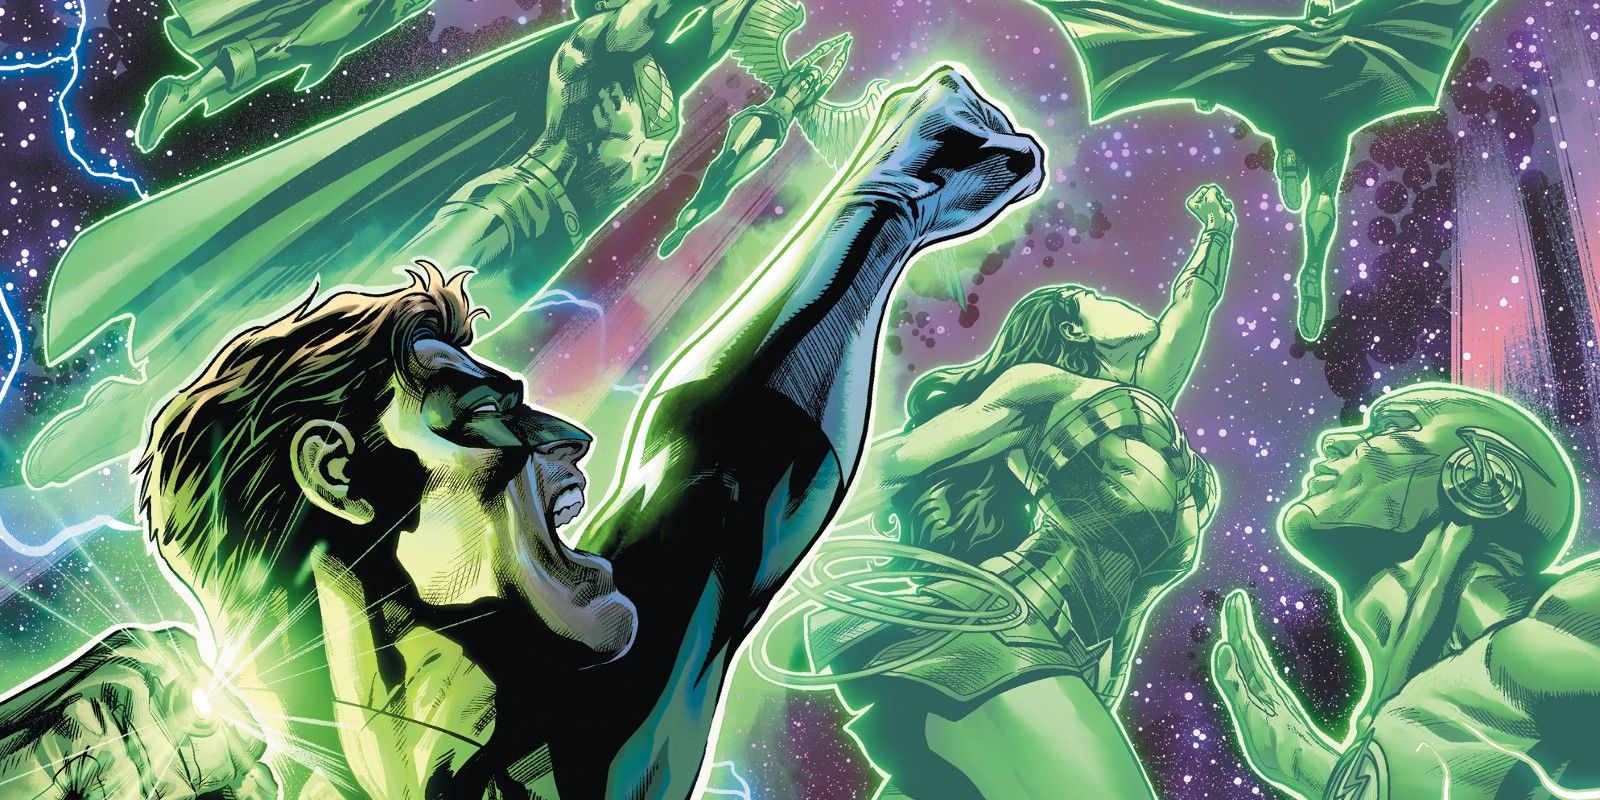 El nuevo cuerpo de Green Lantern obtiene un nombre oficial para su batalla definitiva